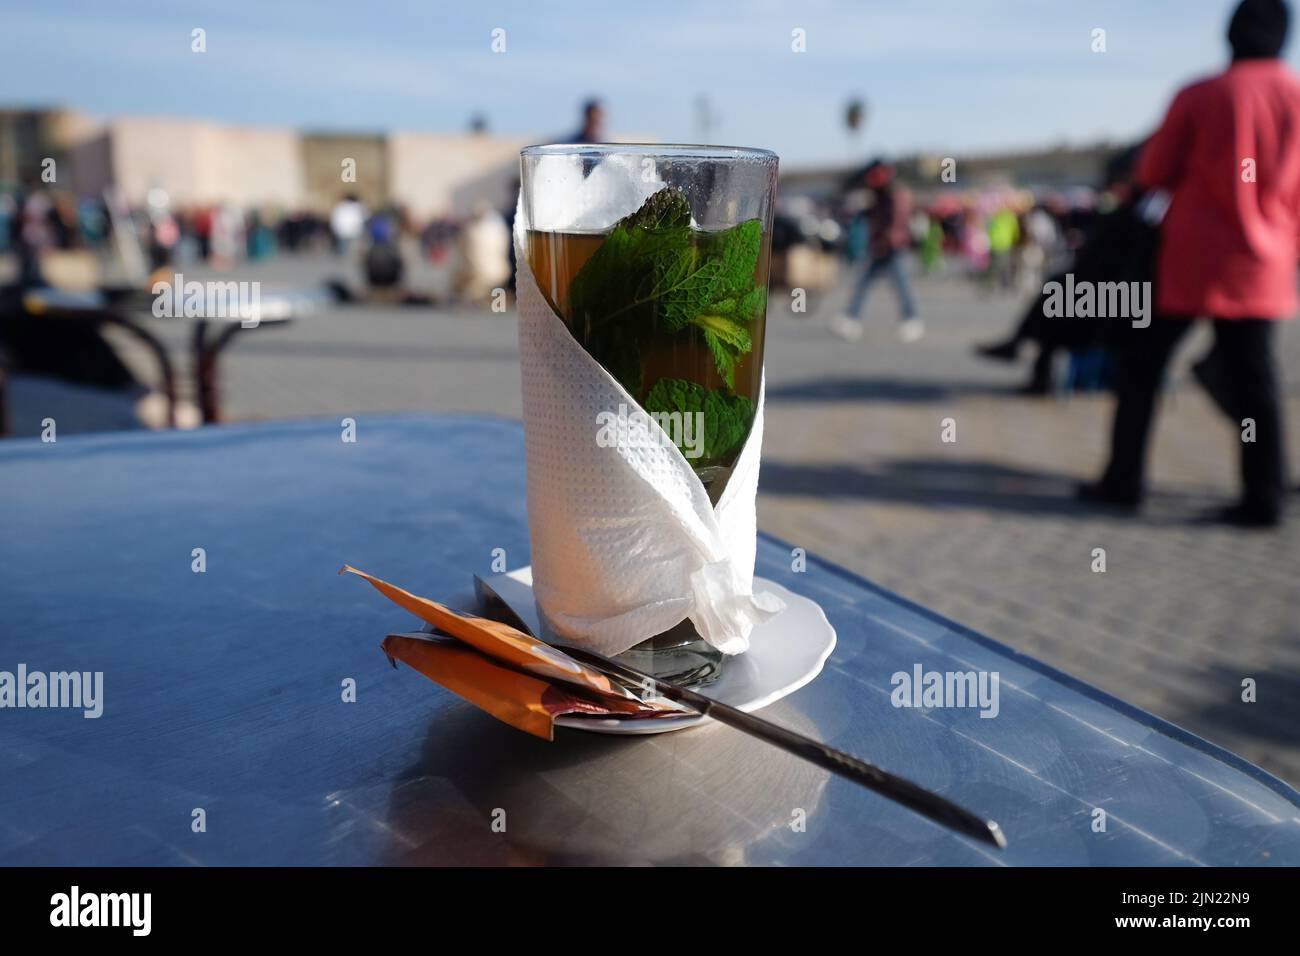 Thé traditionnel à la menthe marocaine chaud avec feuilles de menthe dans un verre enveloppé de papier de soie sur une table. Marrakech, Maroc. Banque D'Images